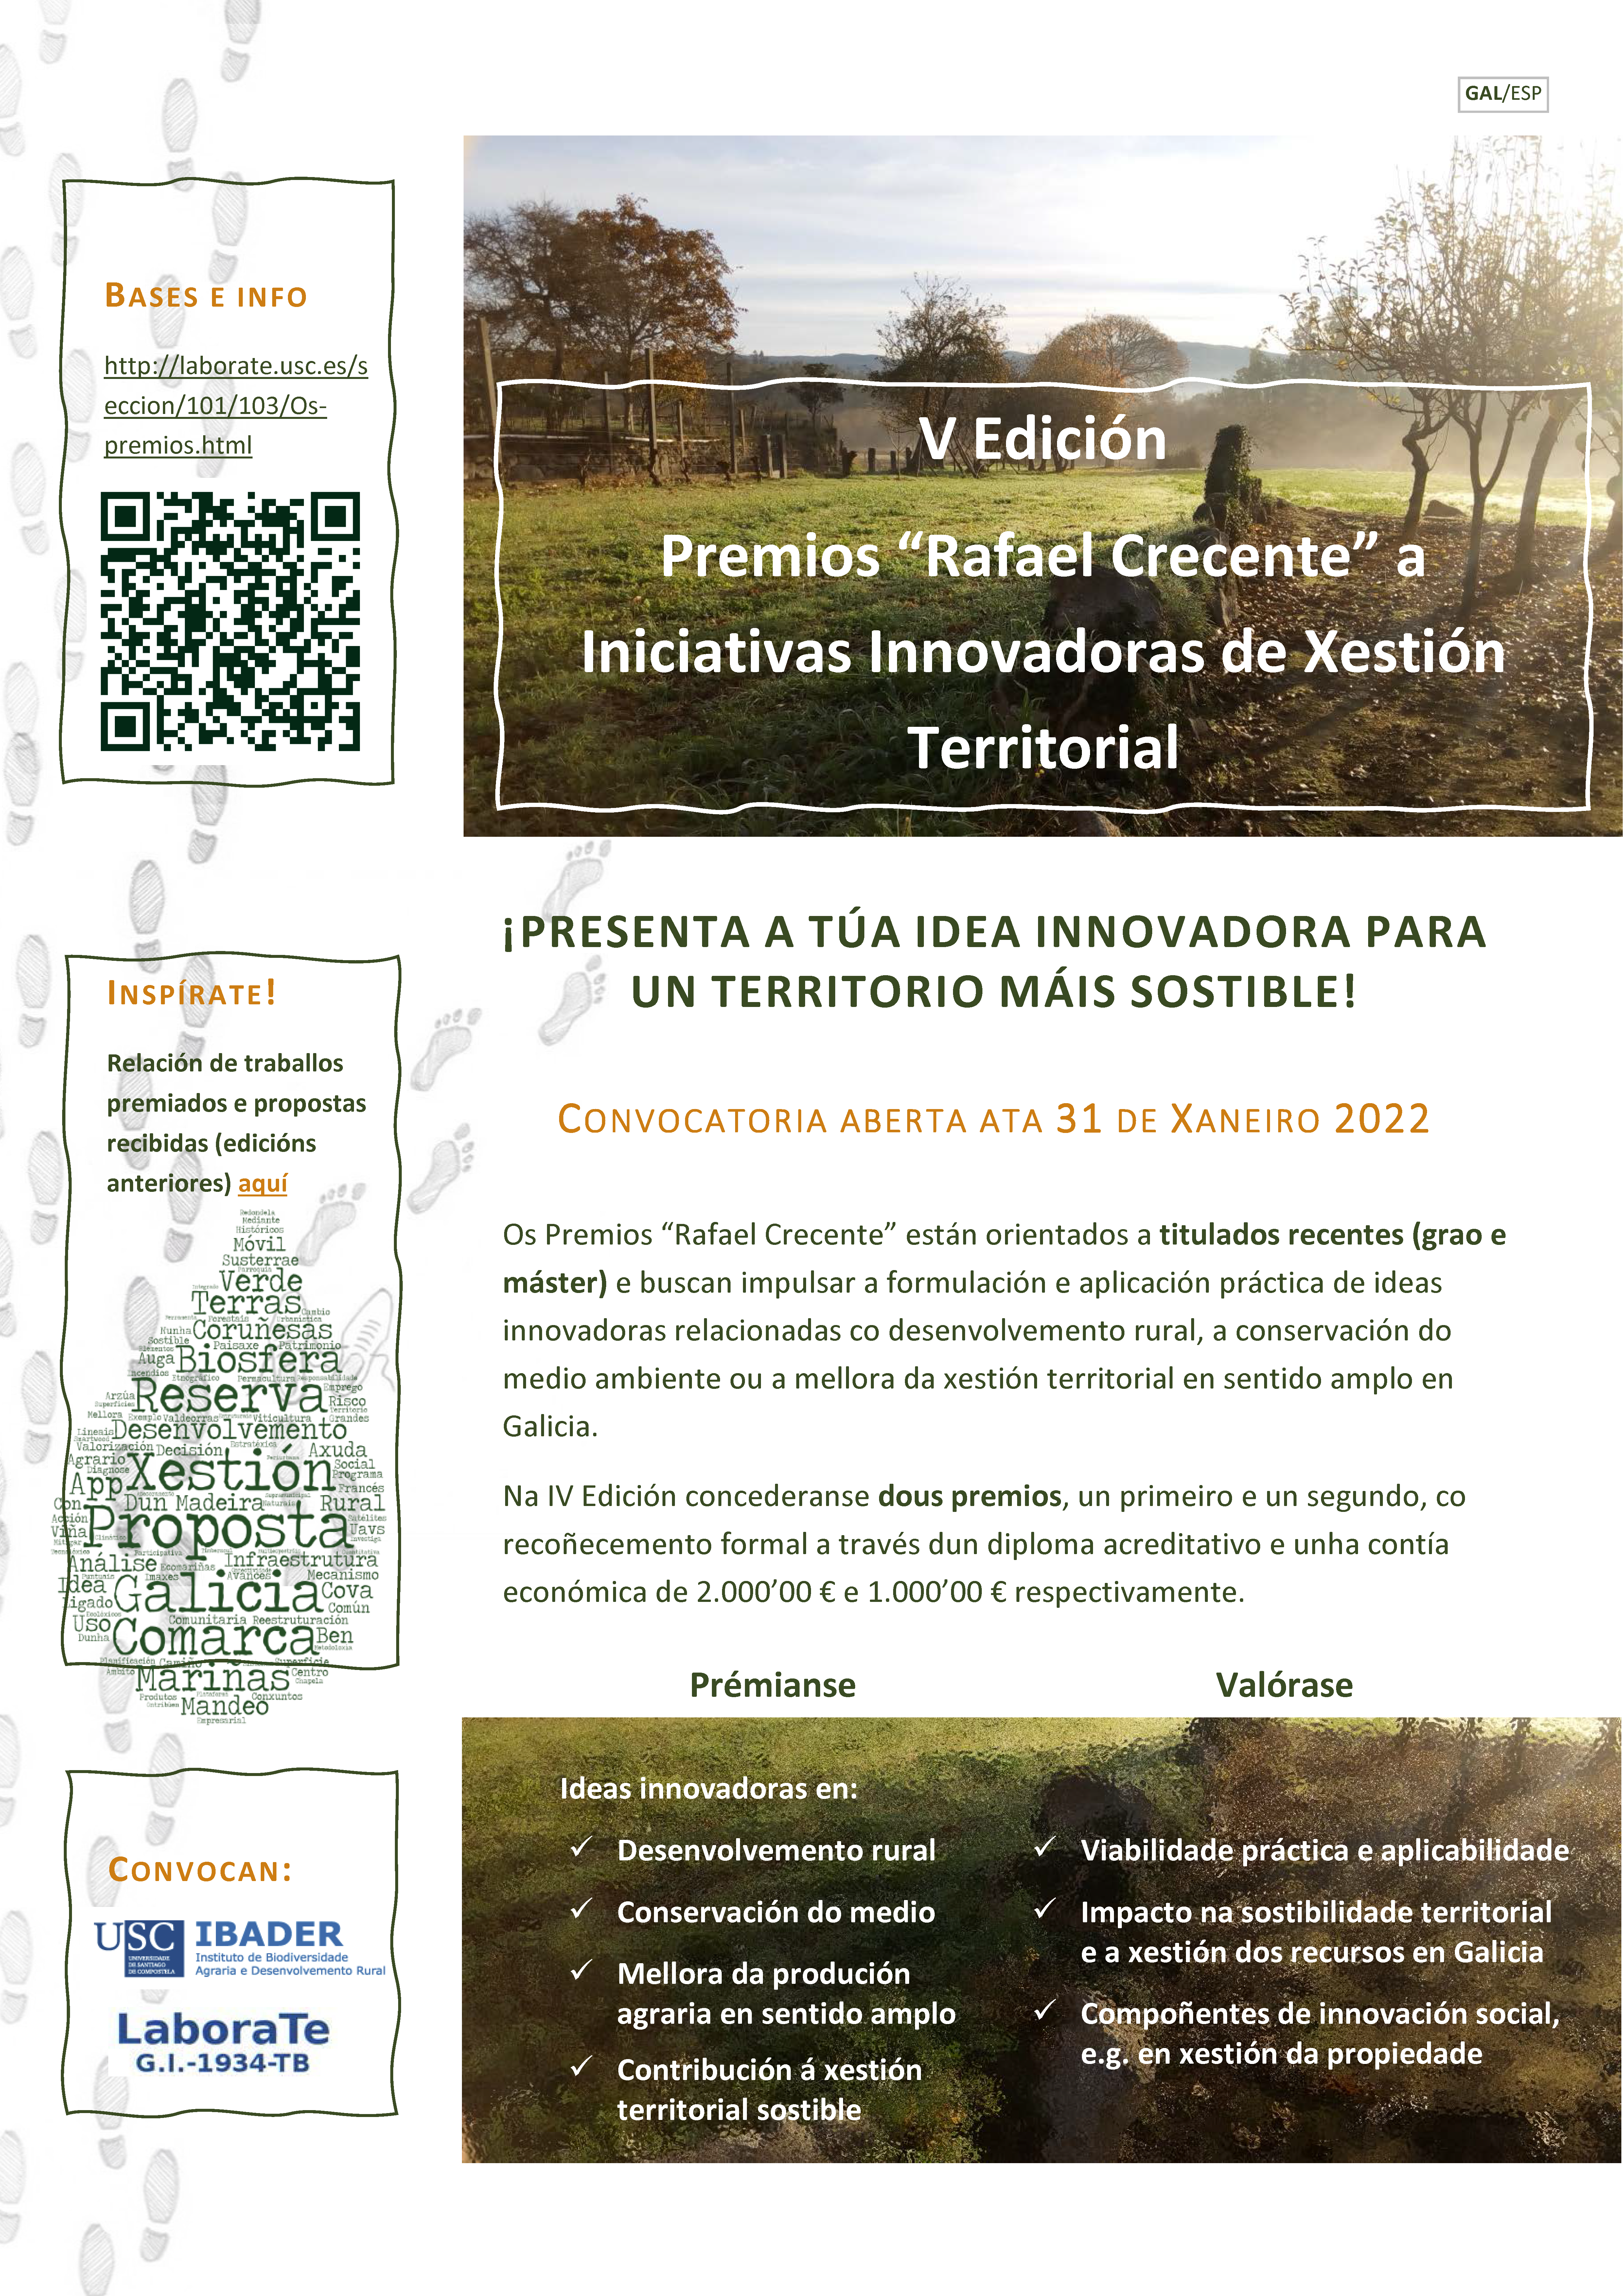 Ábrese o prazo para a presentación de candidaturas para a V Edición dos Premios Rafael Crecente a Iniciativas Innovadoras de Xestión Territorial.